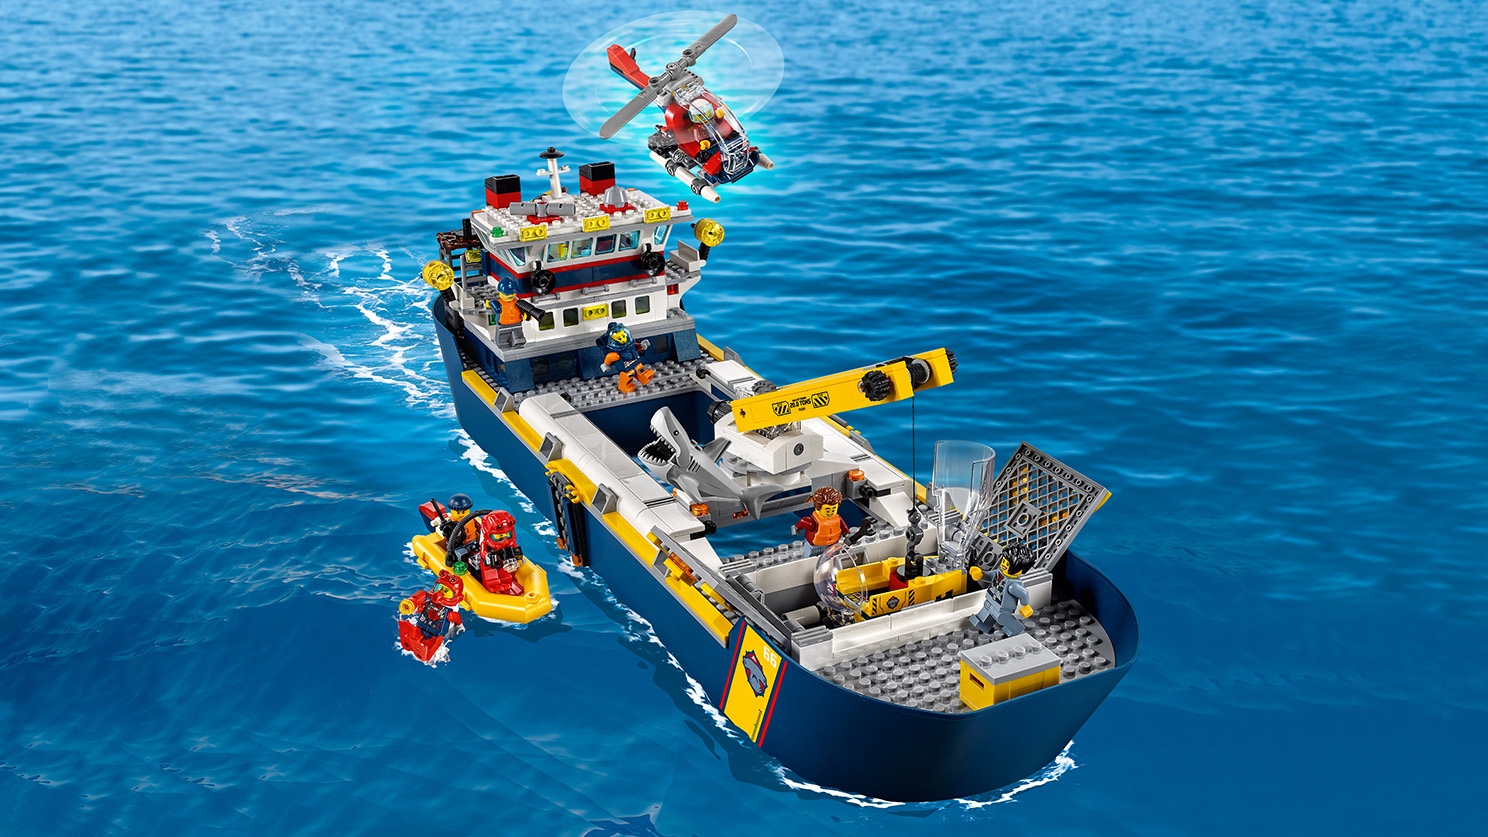 激安特価おもちゃ海の探検隊 海底探査船 60266 - レゴ®シティ セット - LEGO.comキッズ